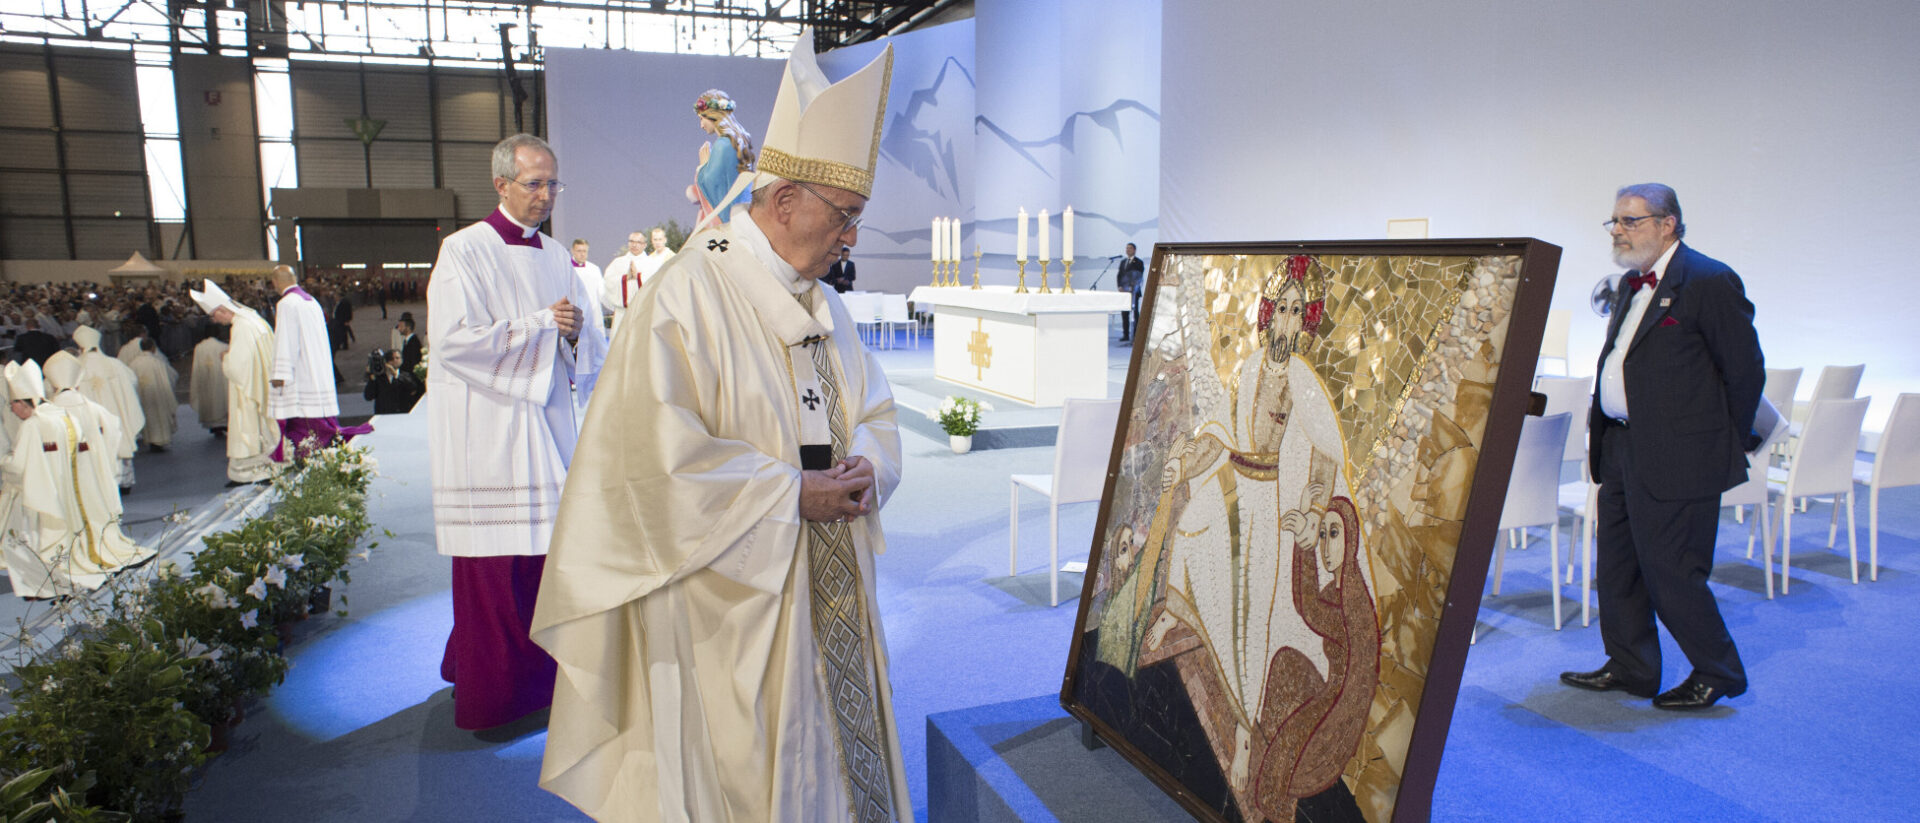 Papst Franziskus betrachtet 2018 ein Mosaik von Marko Rupnik in Genf.